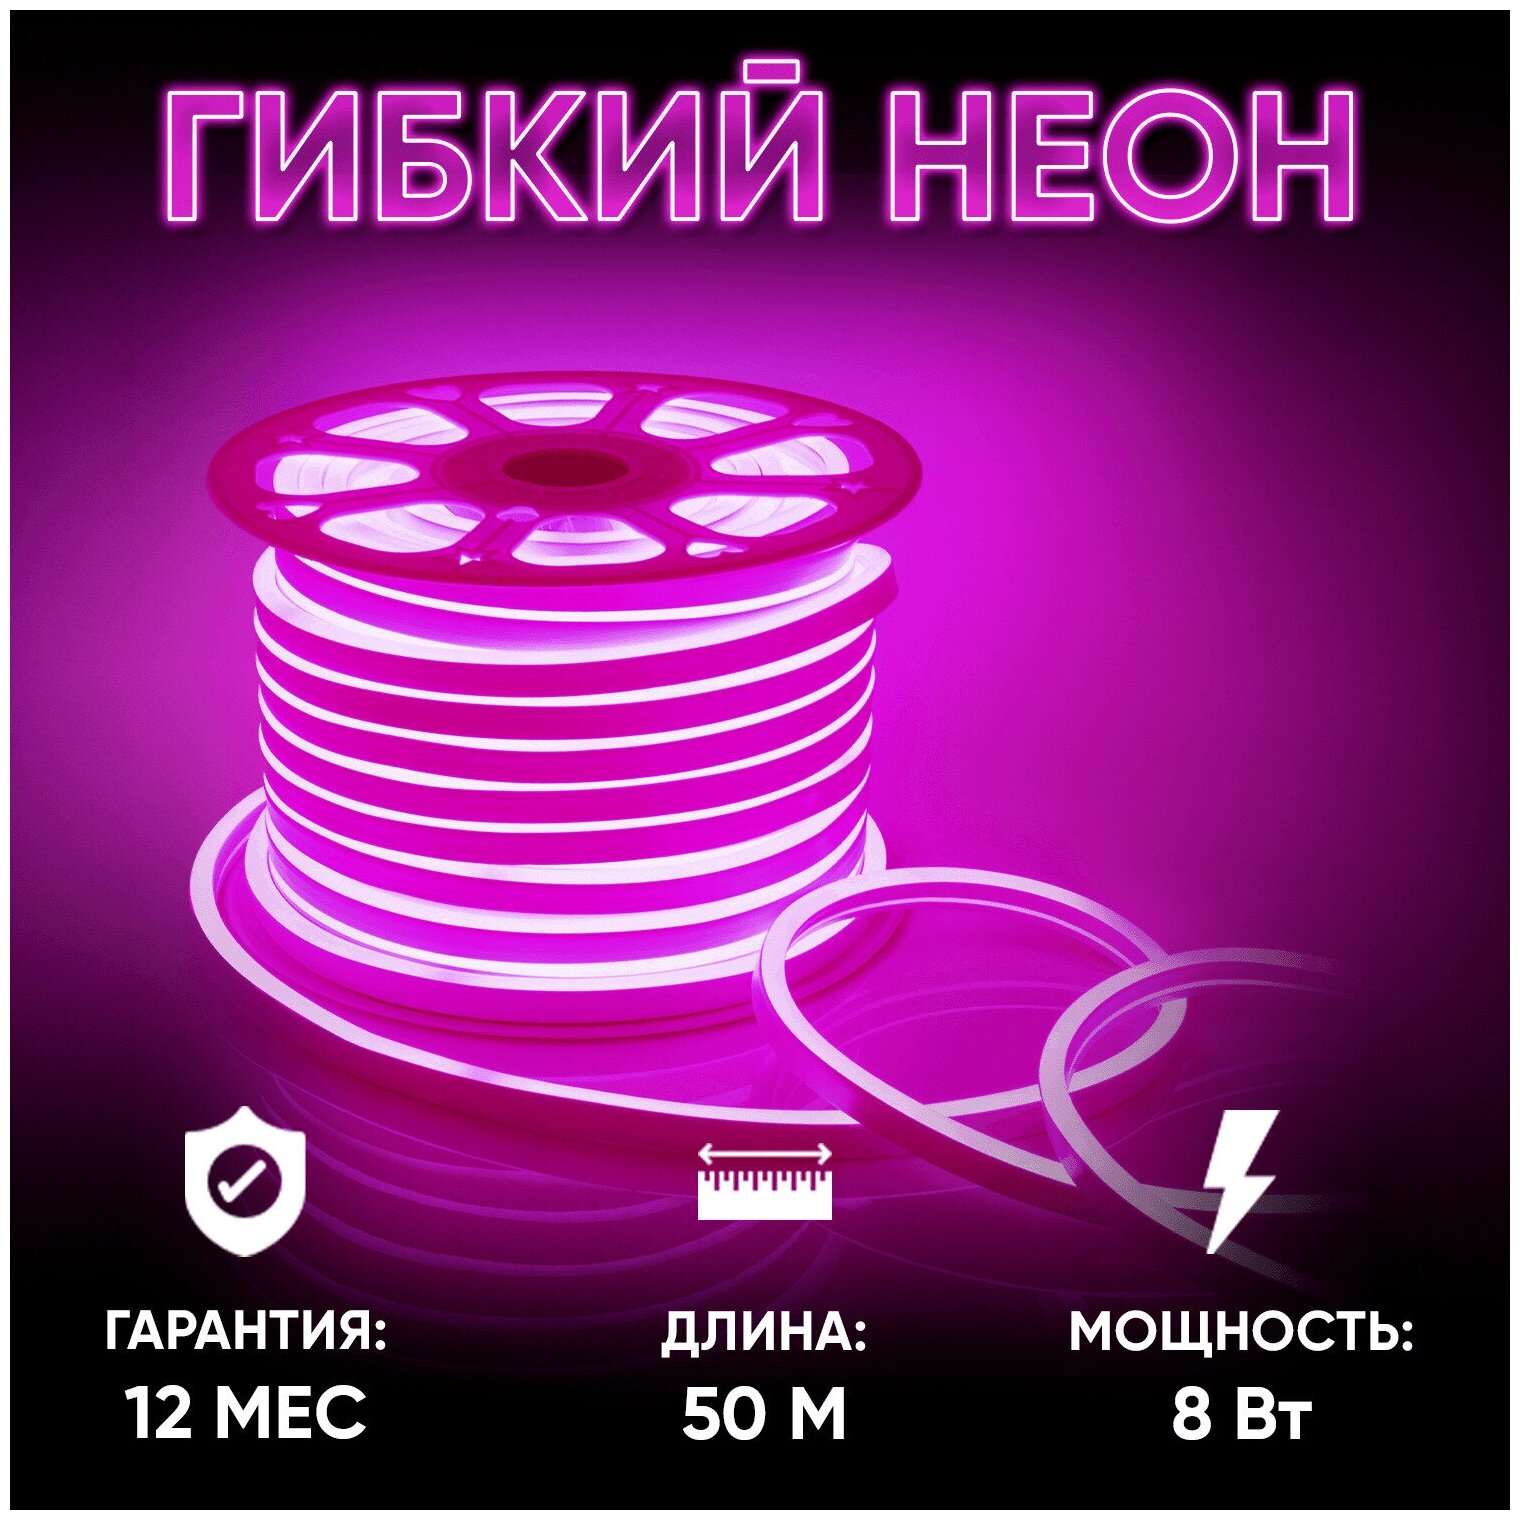 Гибкий светодиодный неон с напряжением 220В, обладает розовым цветом свечения, излучает световой поток равный 200 Лм/м / SMD2835 / 108д/м / 8Вт/м / IP65 / двухслойная белая основа длиной 50 метров, 10.5x18.5мм / без аксессуаров / гарантия 1